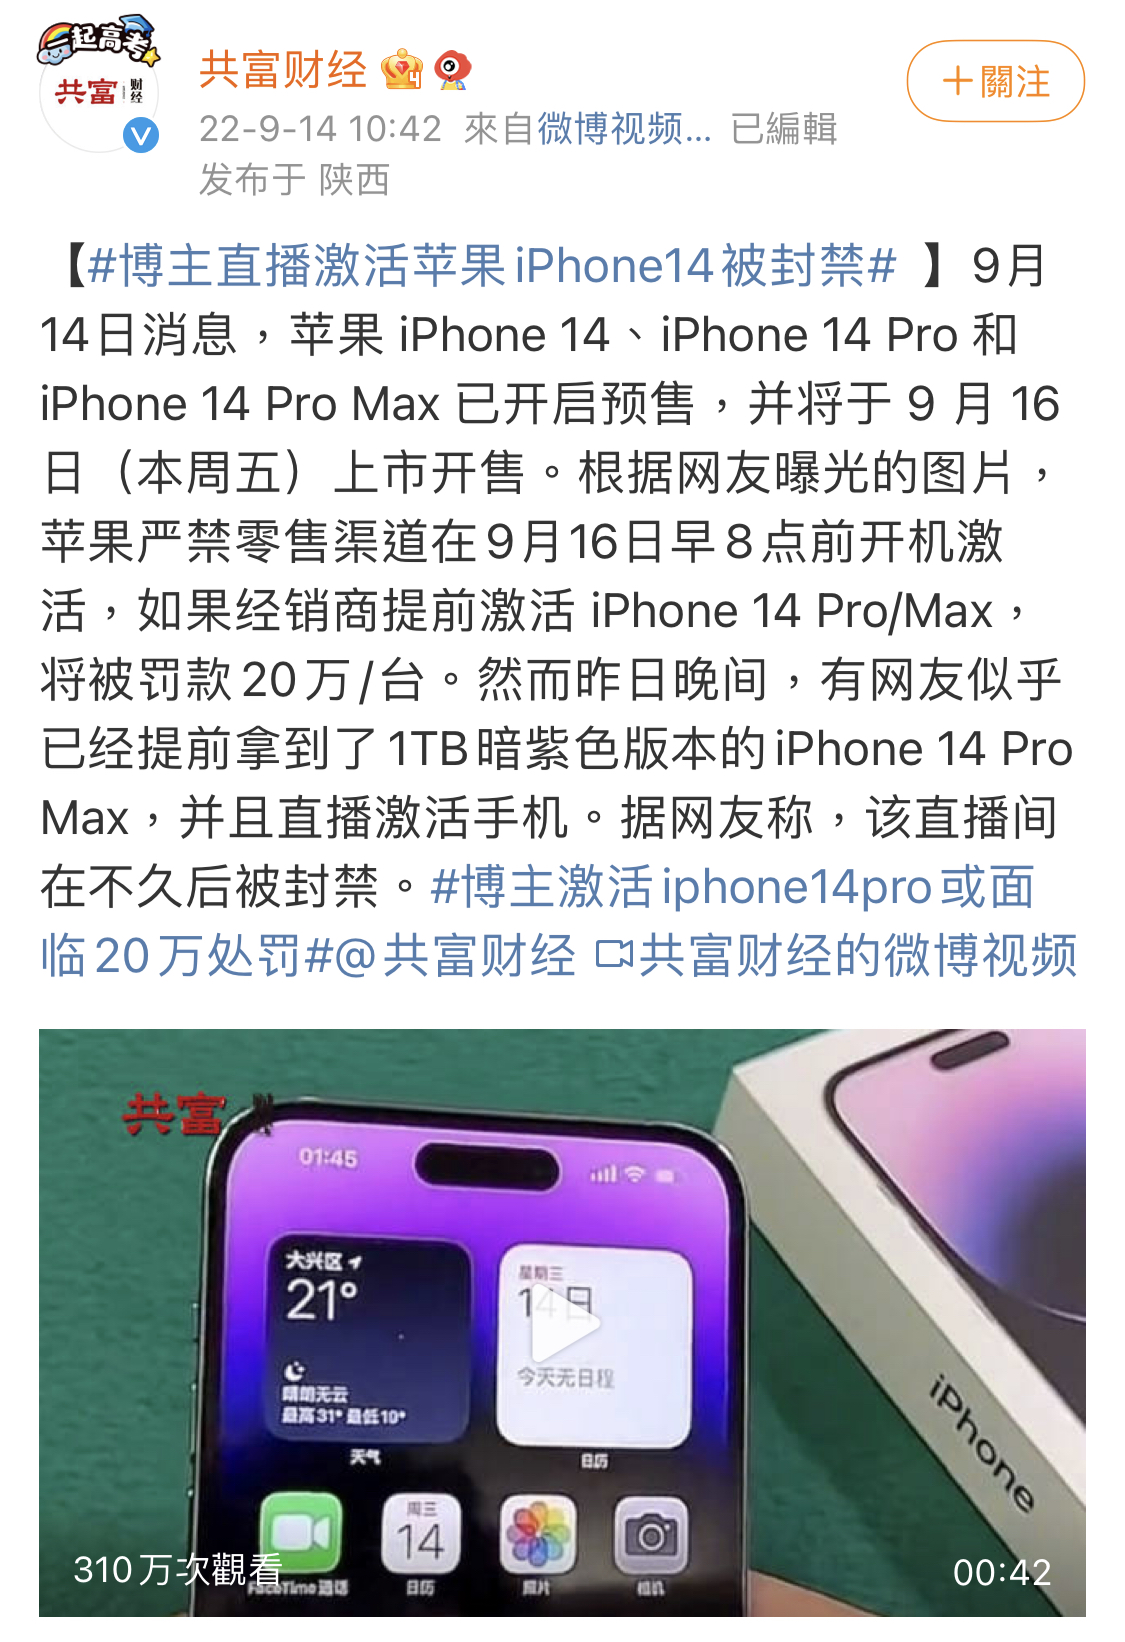 苹果 IPhone 15 泄漏揭示了令人惊叹的新显示功能 | TechBriefly CN